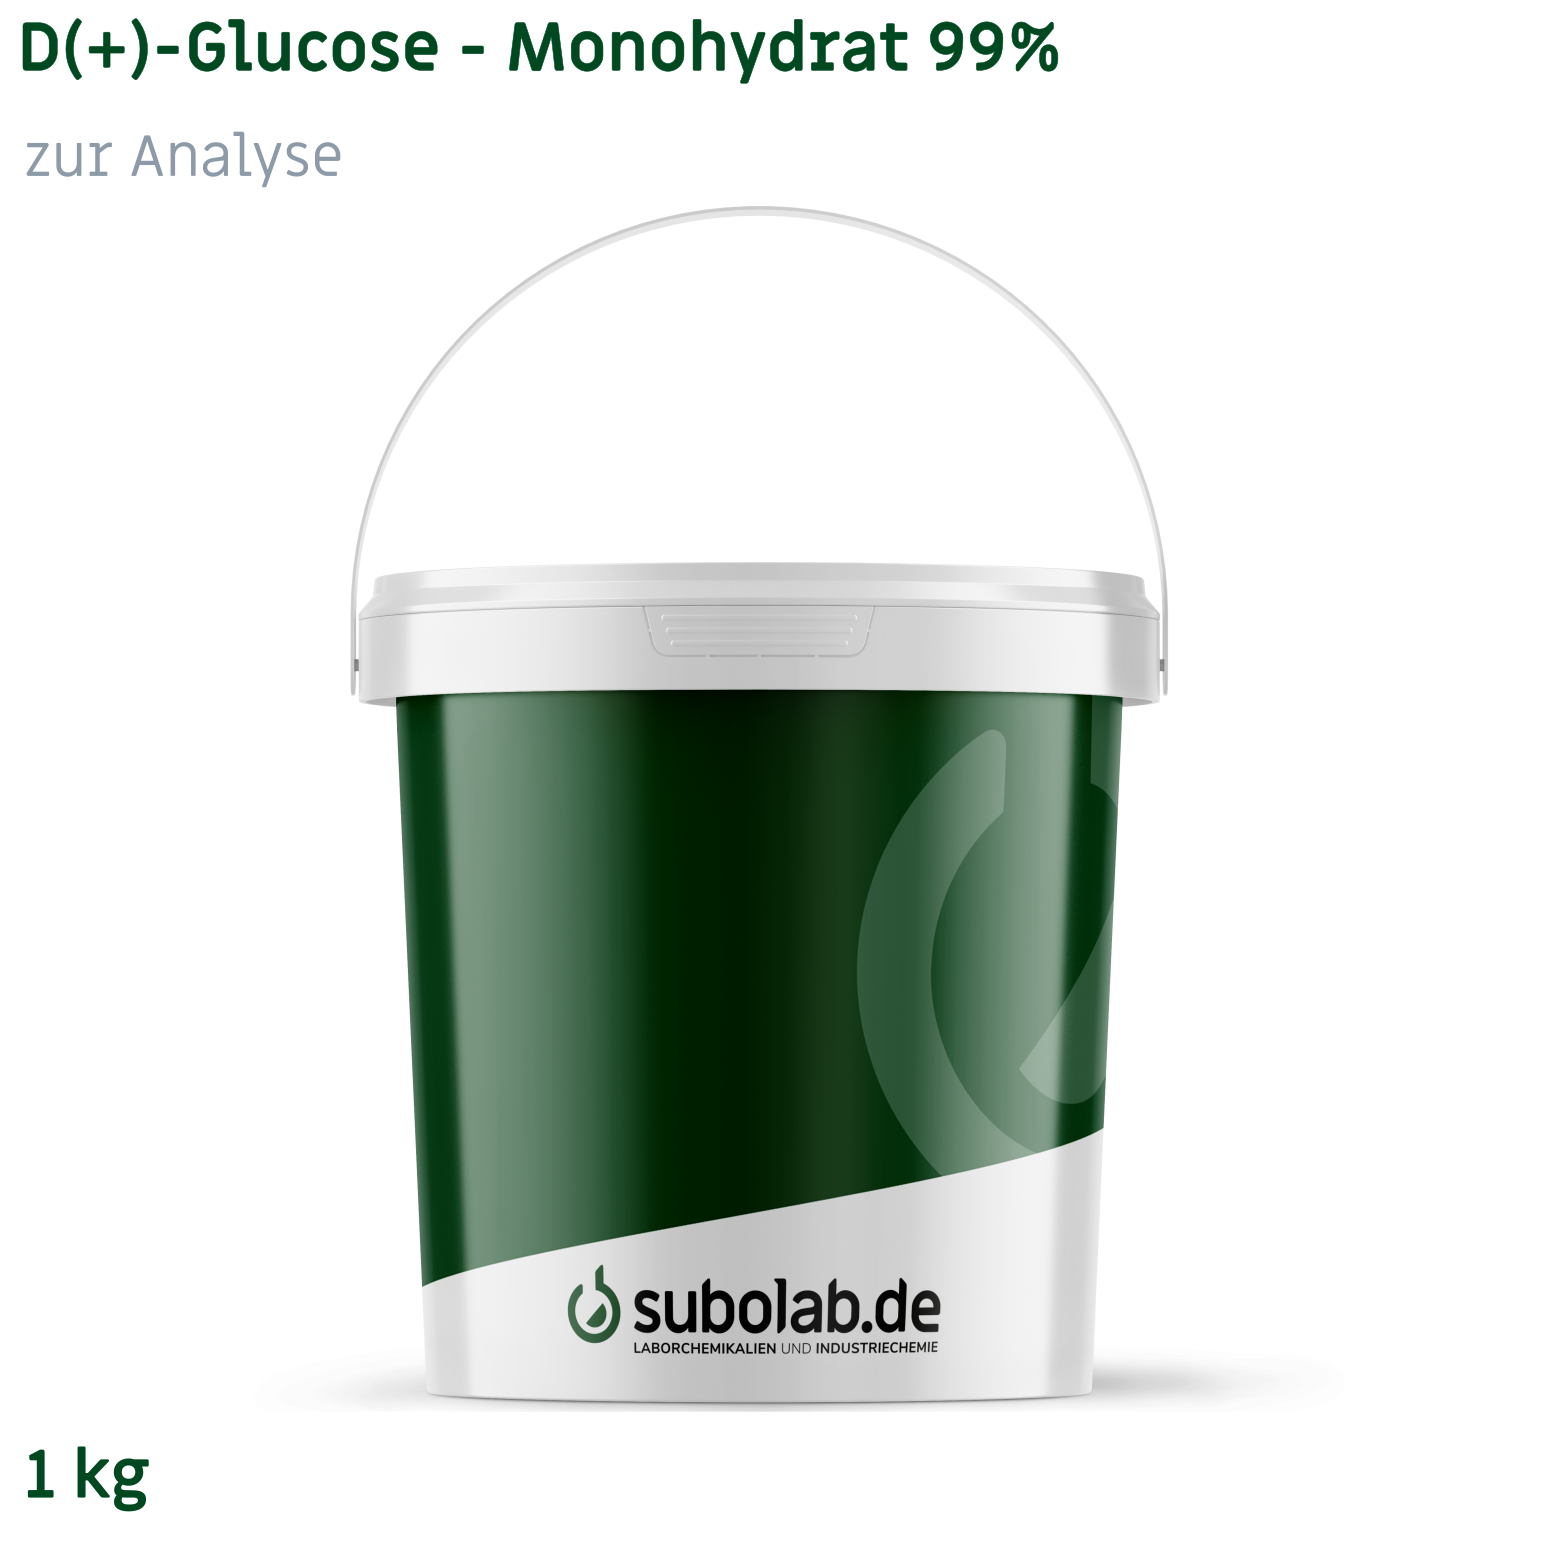 Bild von D(+)-Glucose - Monohydrat 99% zur Analyse (1 kg)